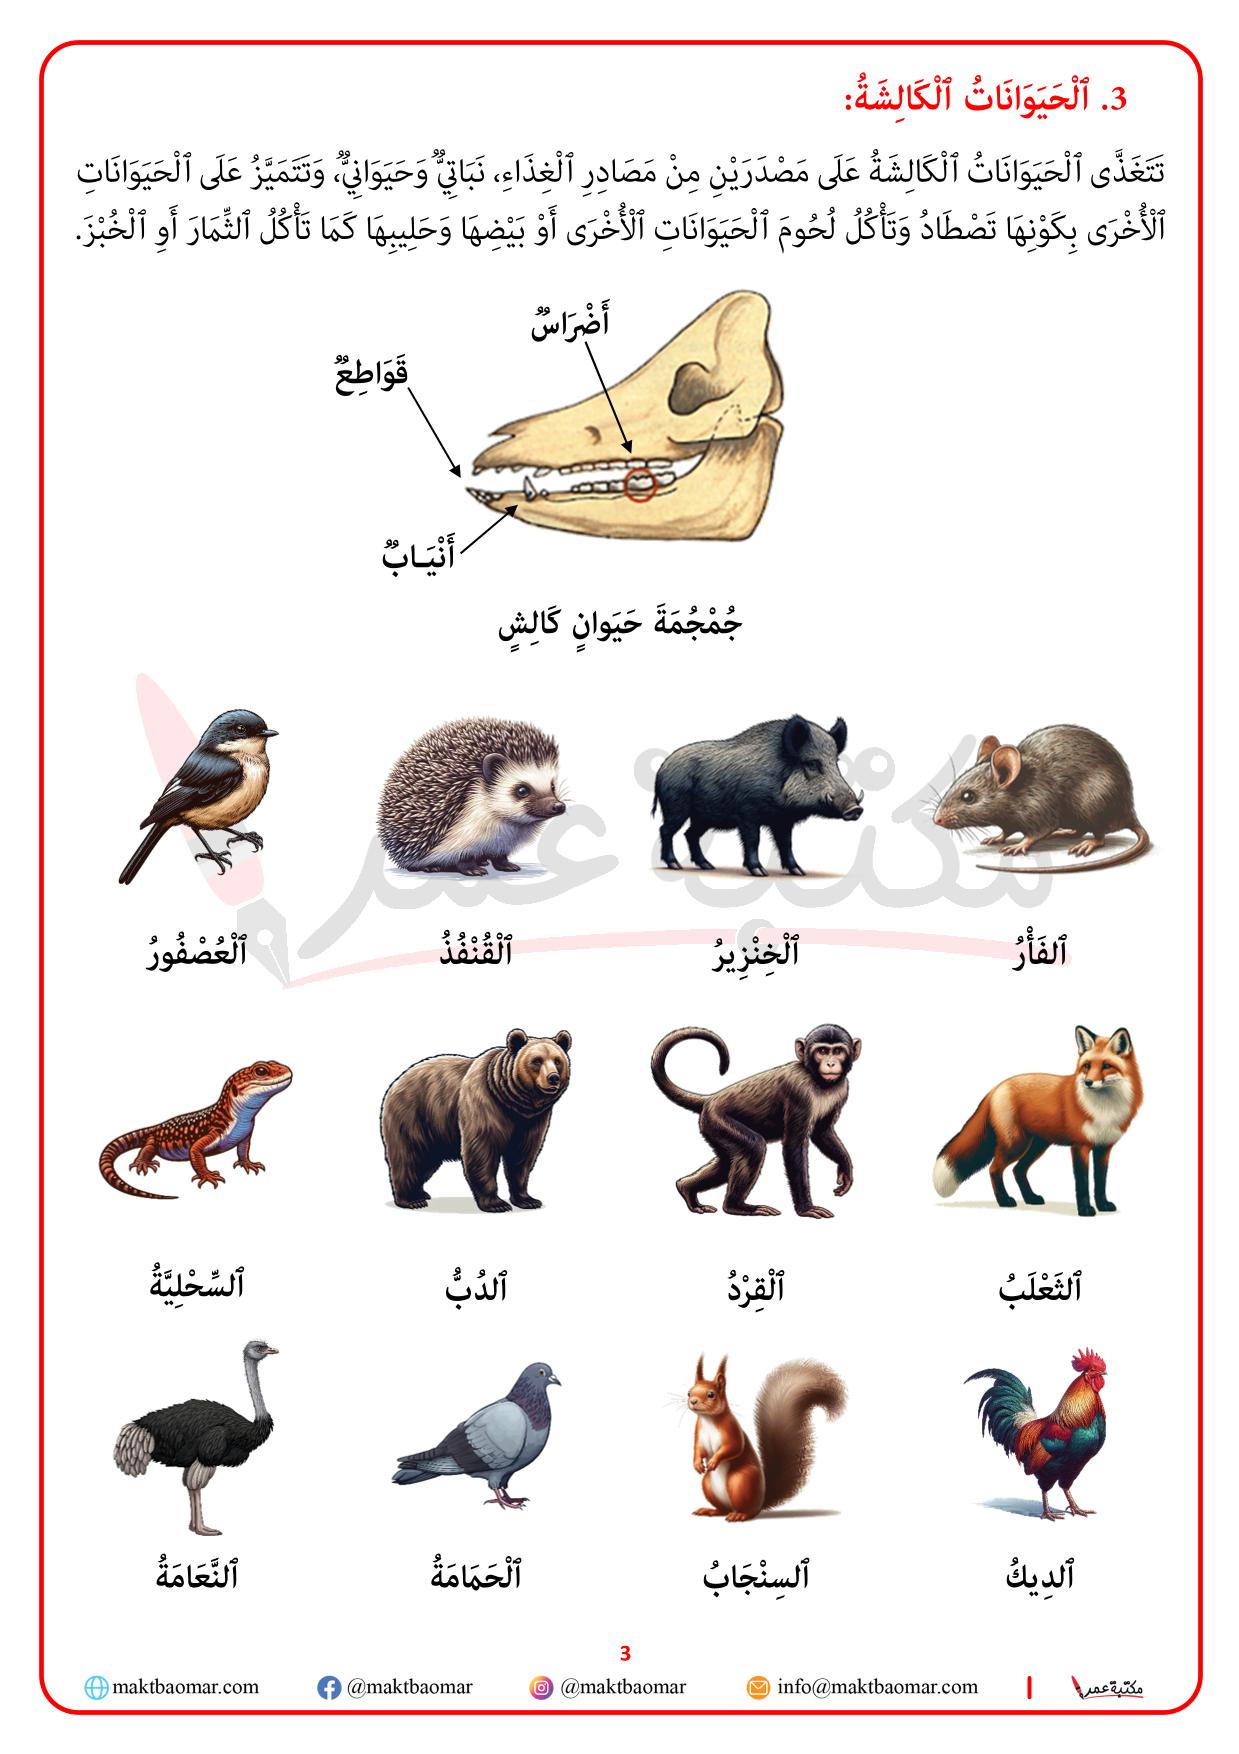 تصنيف الحيوانات حسب نوع الغذاء الذي تعيش عليه-3